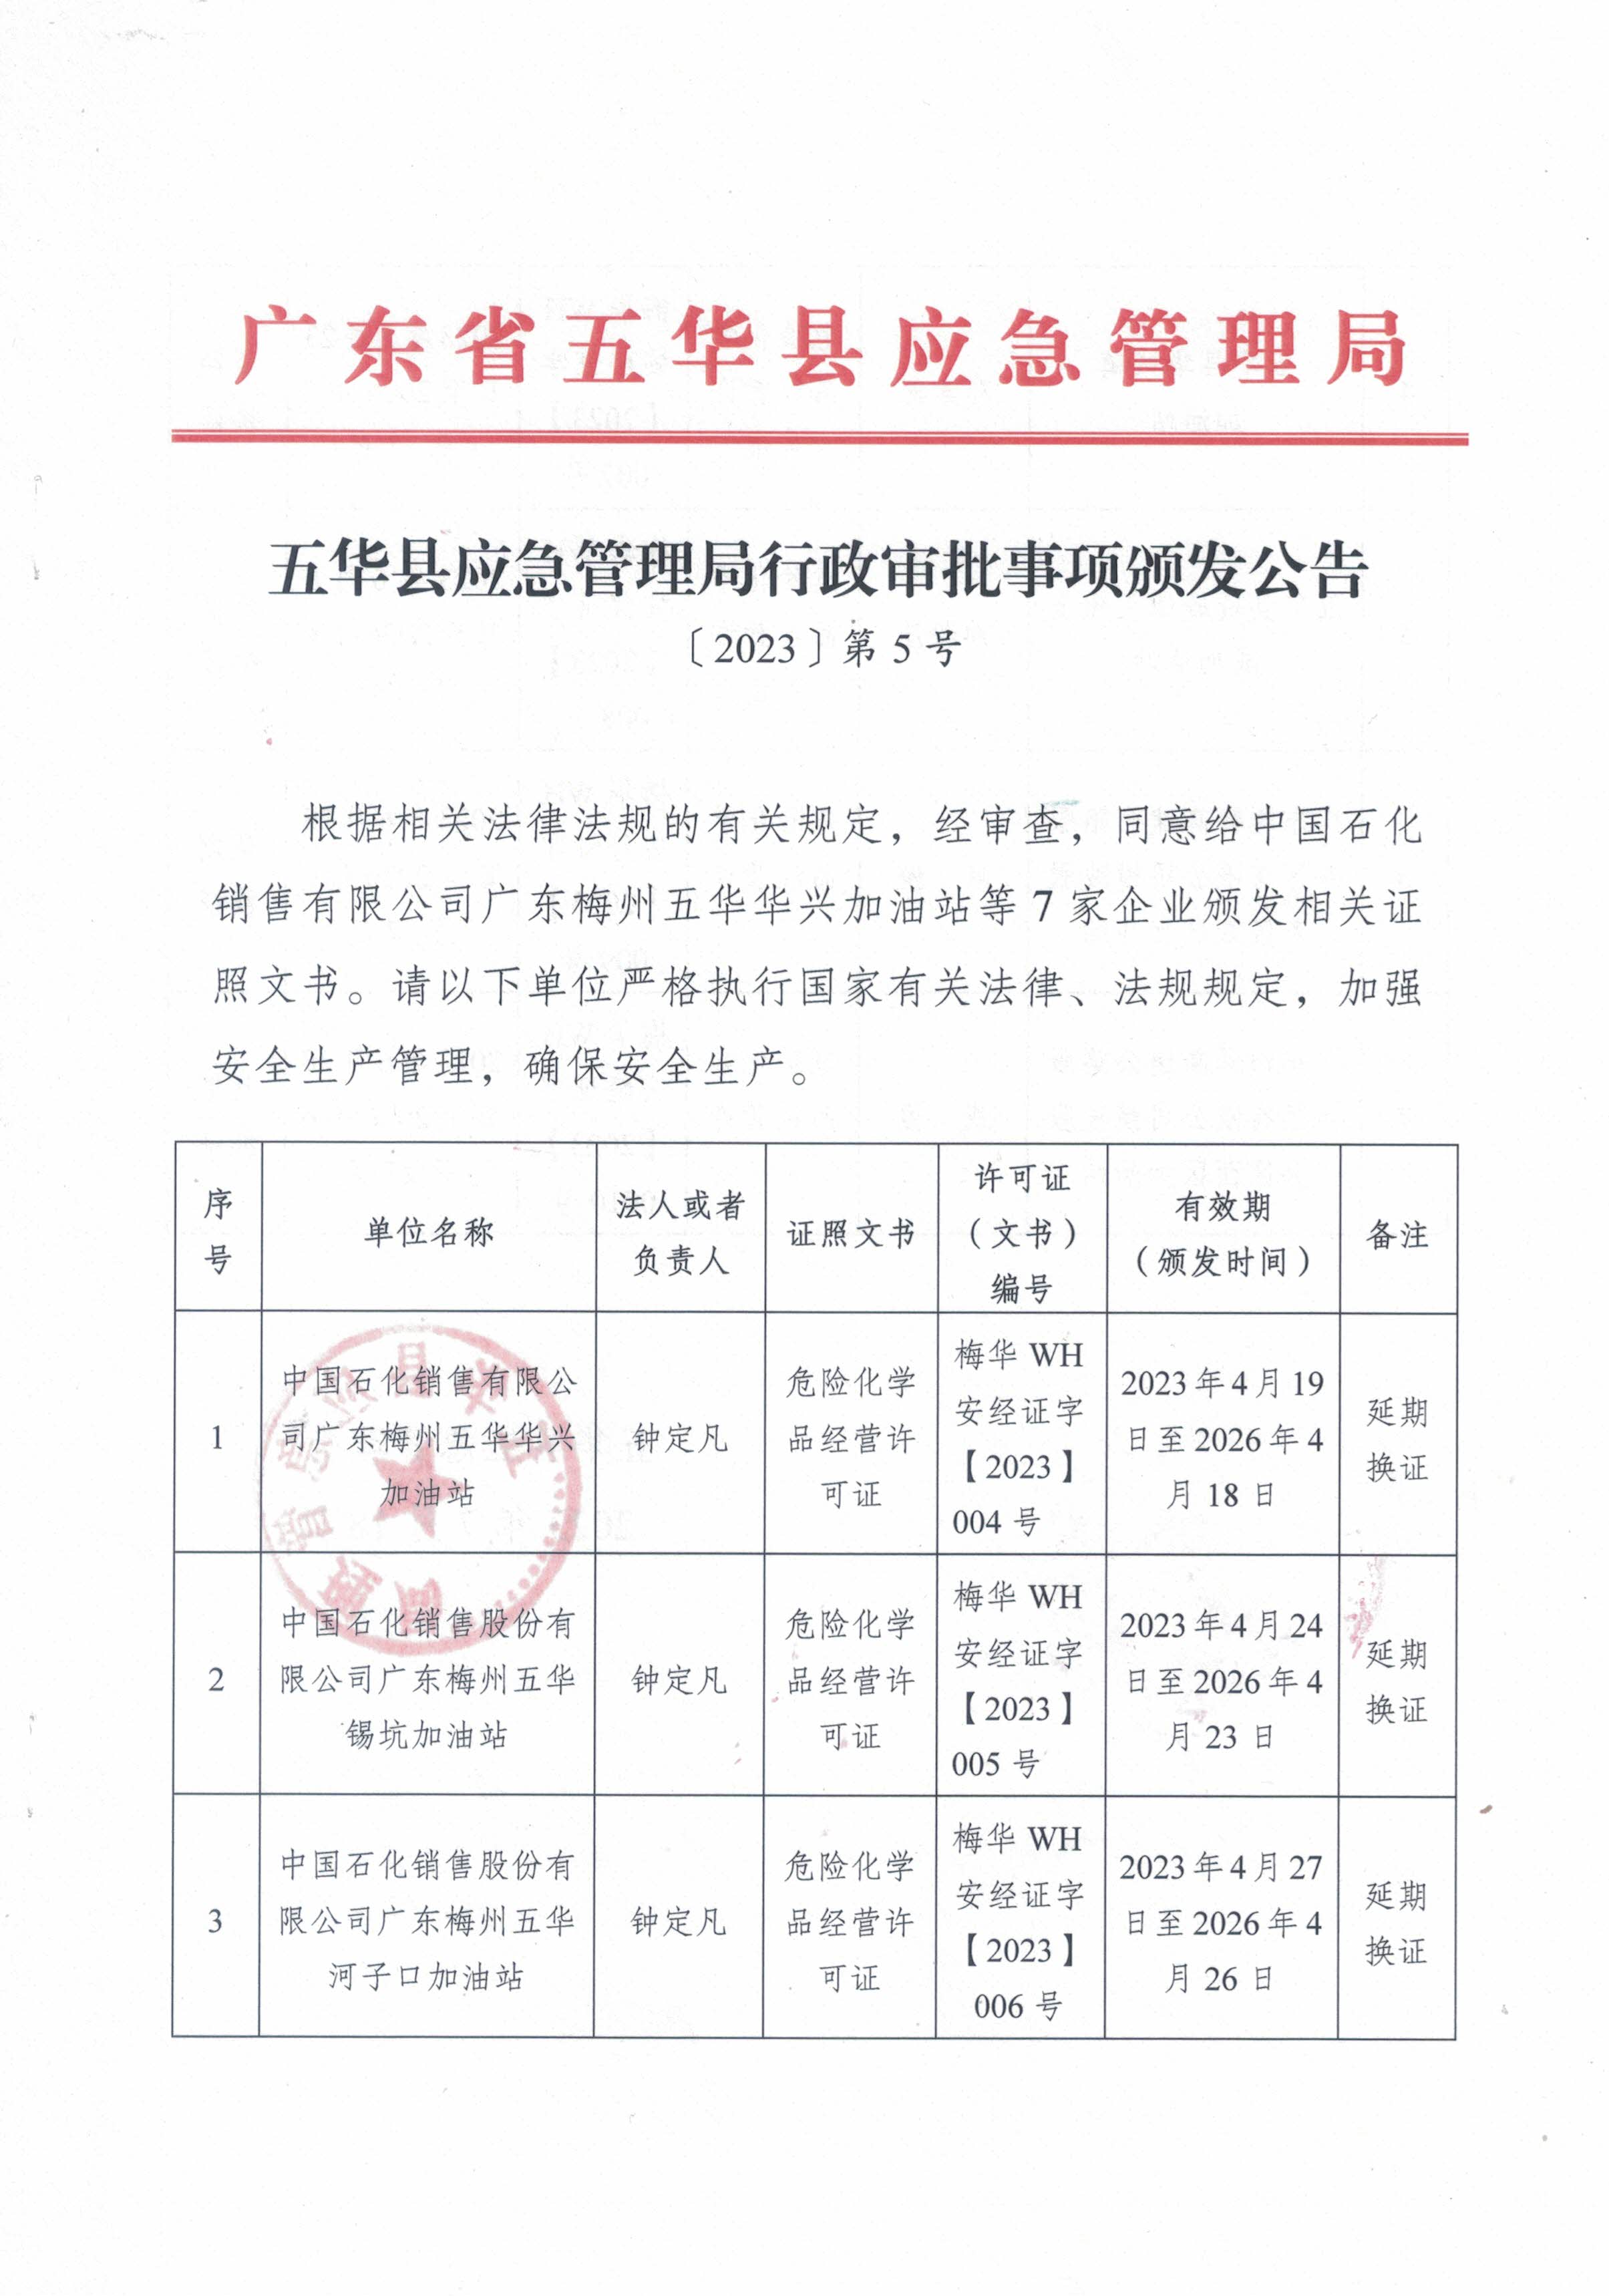 （2023年第5号）五华县应急管理局行政审批事项颁发公告（1）.jpg